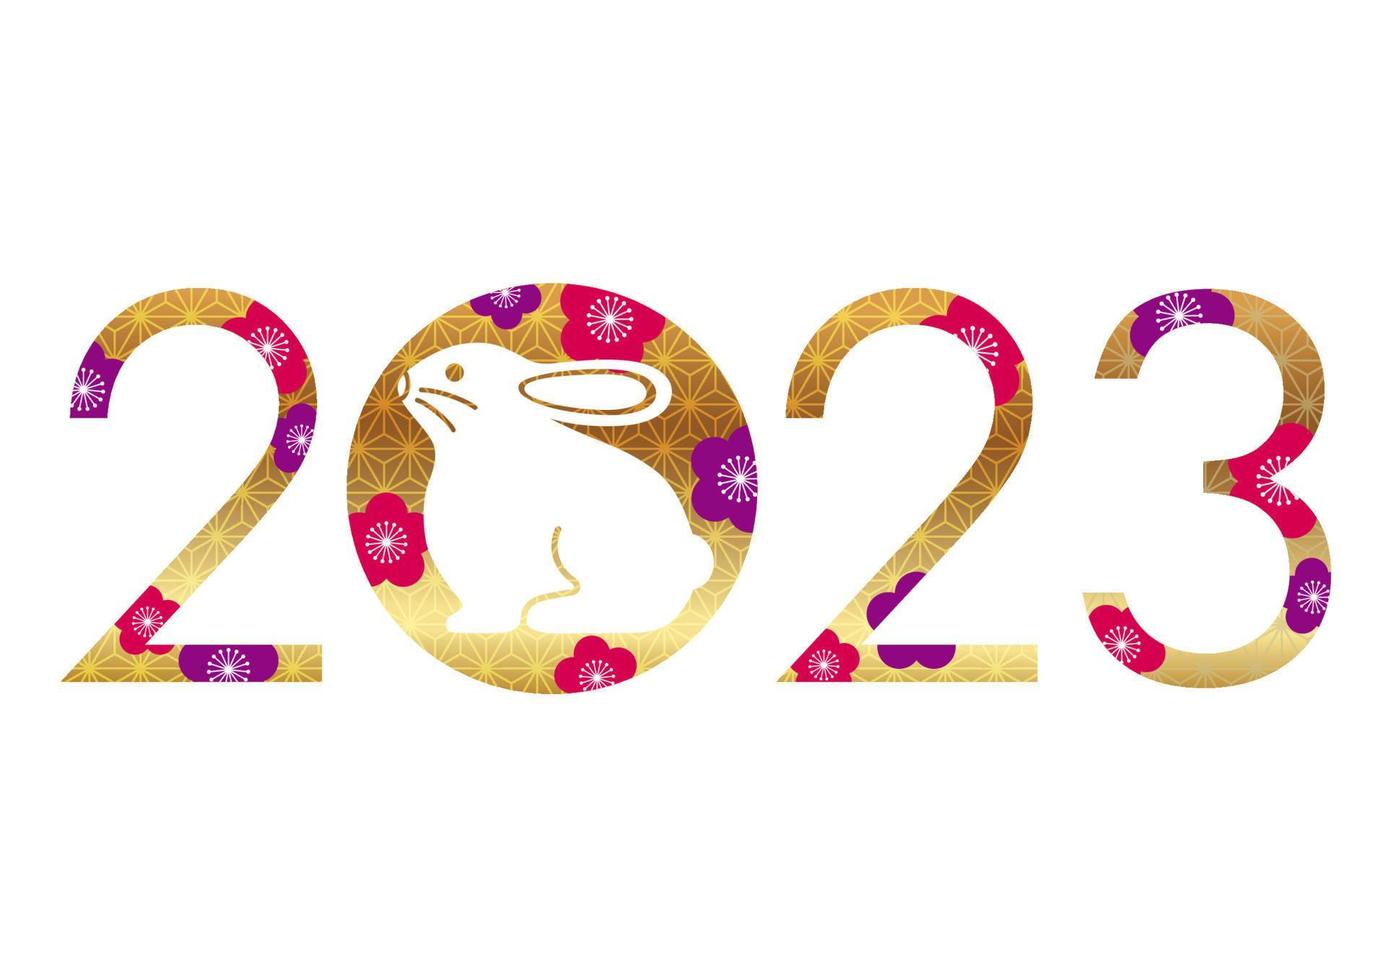 l'anno 2023, l'anno del coniglio, simbolo di saluto con una mascotte di coniglio decorata con motivi vintage giapponesi. vettore